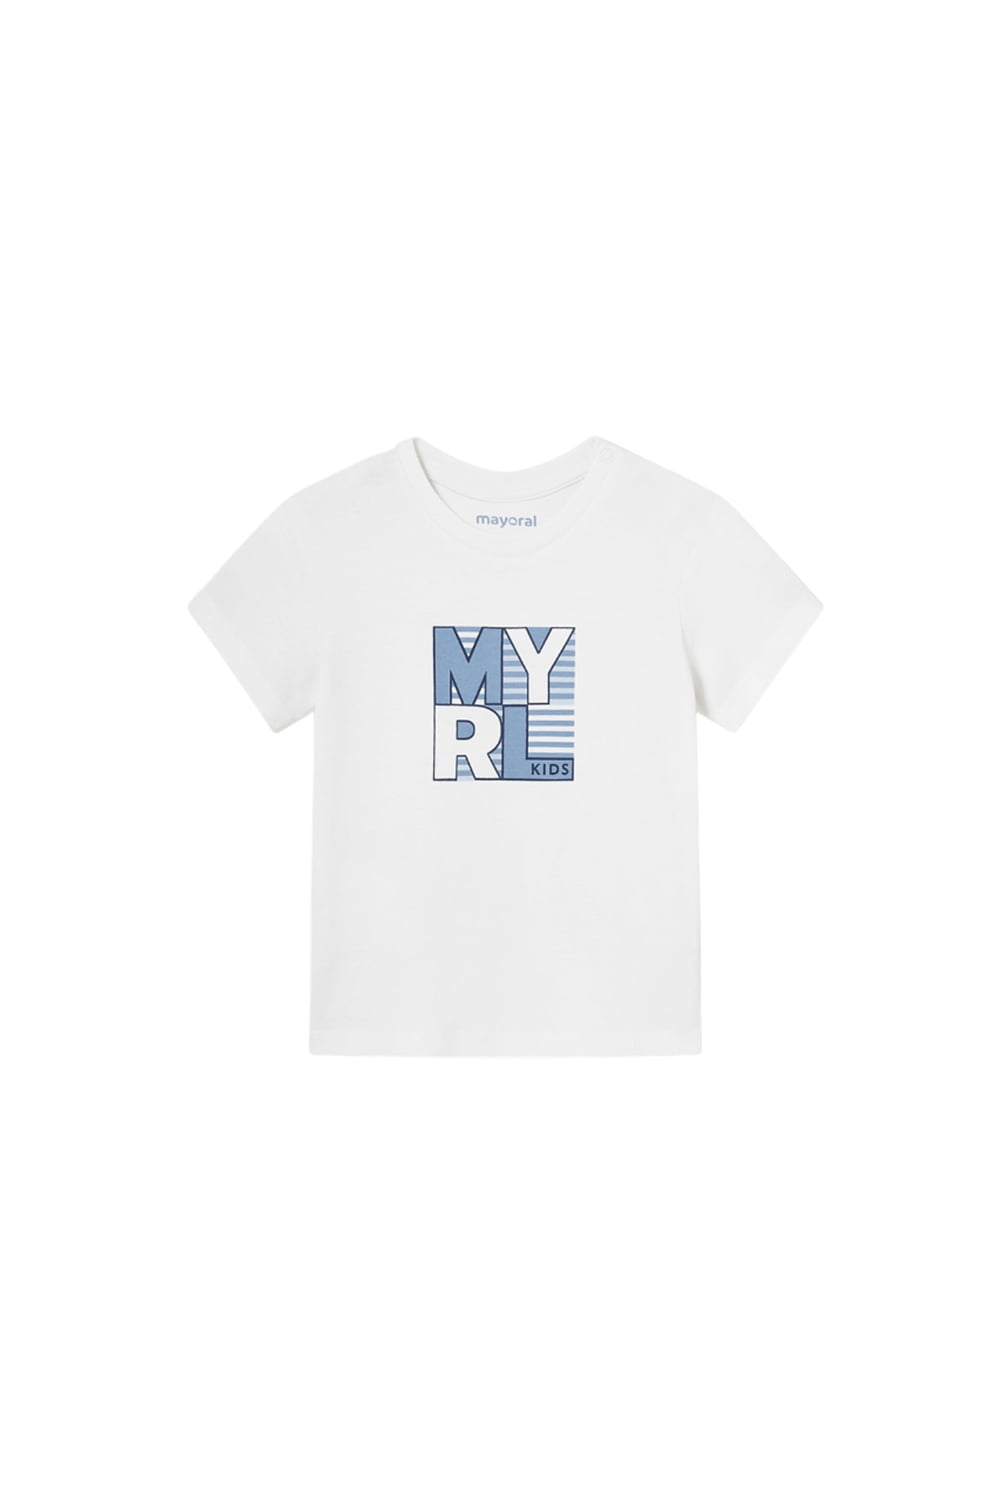 Παιδική Μπλούζα Για Αγόρι MAYORAL 24-00106-025 Άσπρο